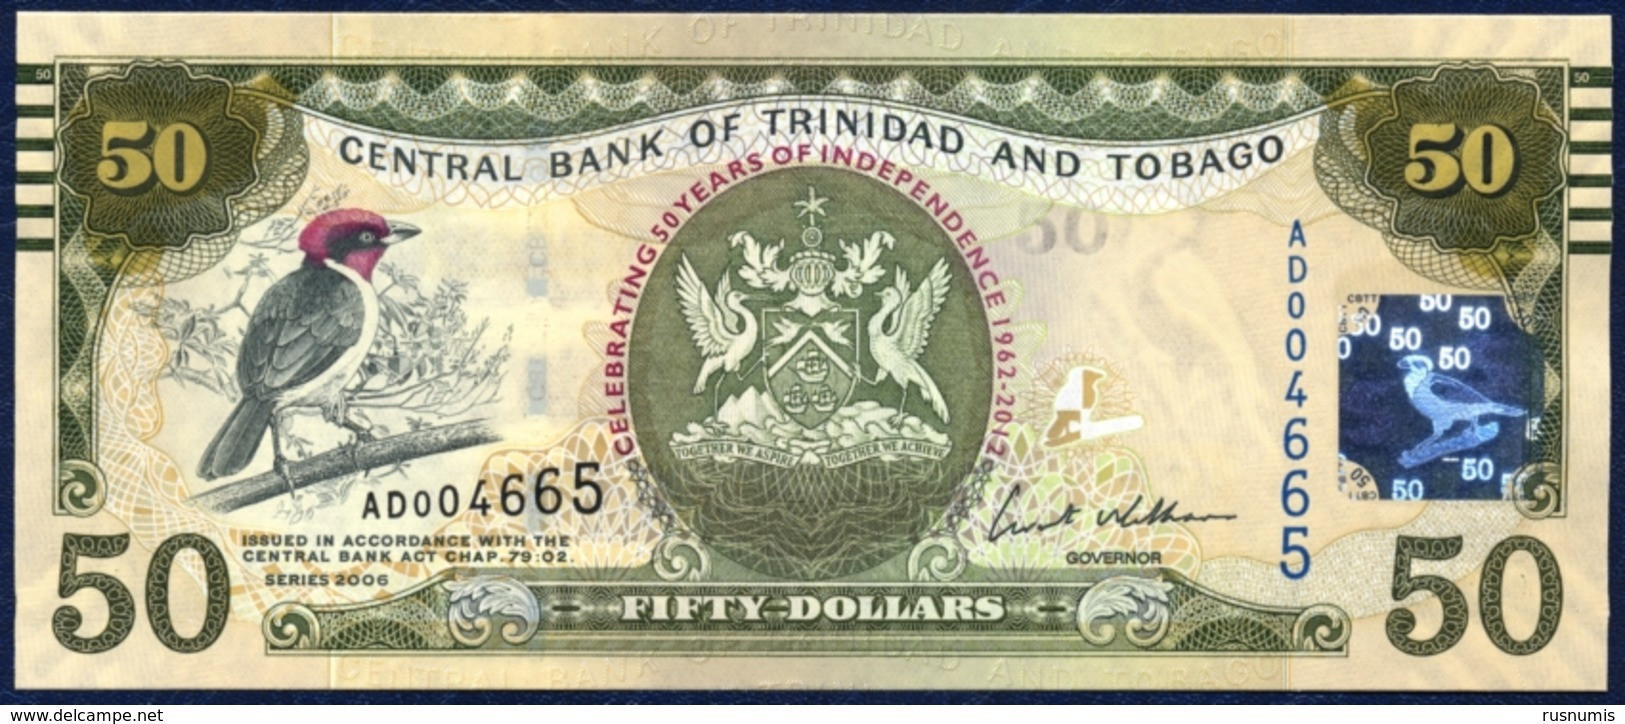 TRINIDAD AND TOBAGO 50 DOLLARS P-53 COMMEMORATIVE 50th ANNIVERSARY OF INDEPENDENCE CARDINAL BIRD  2006 / 2012 UNC - Trinidad & Tobago